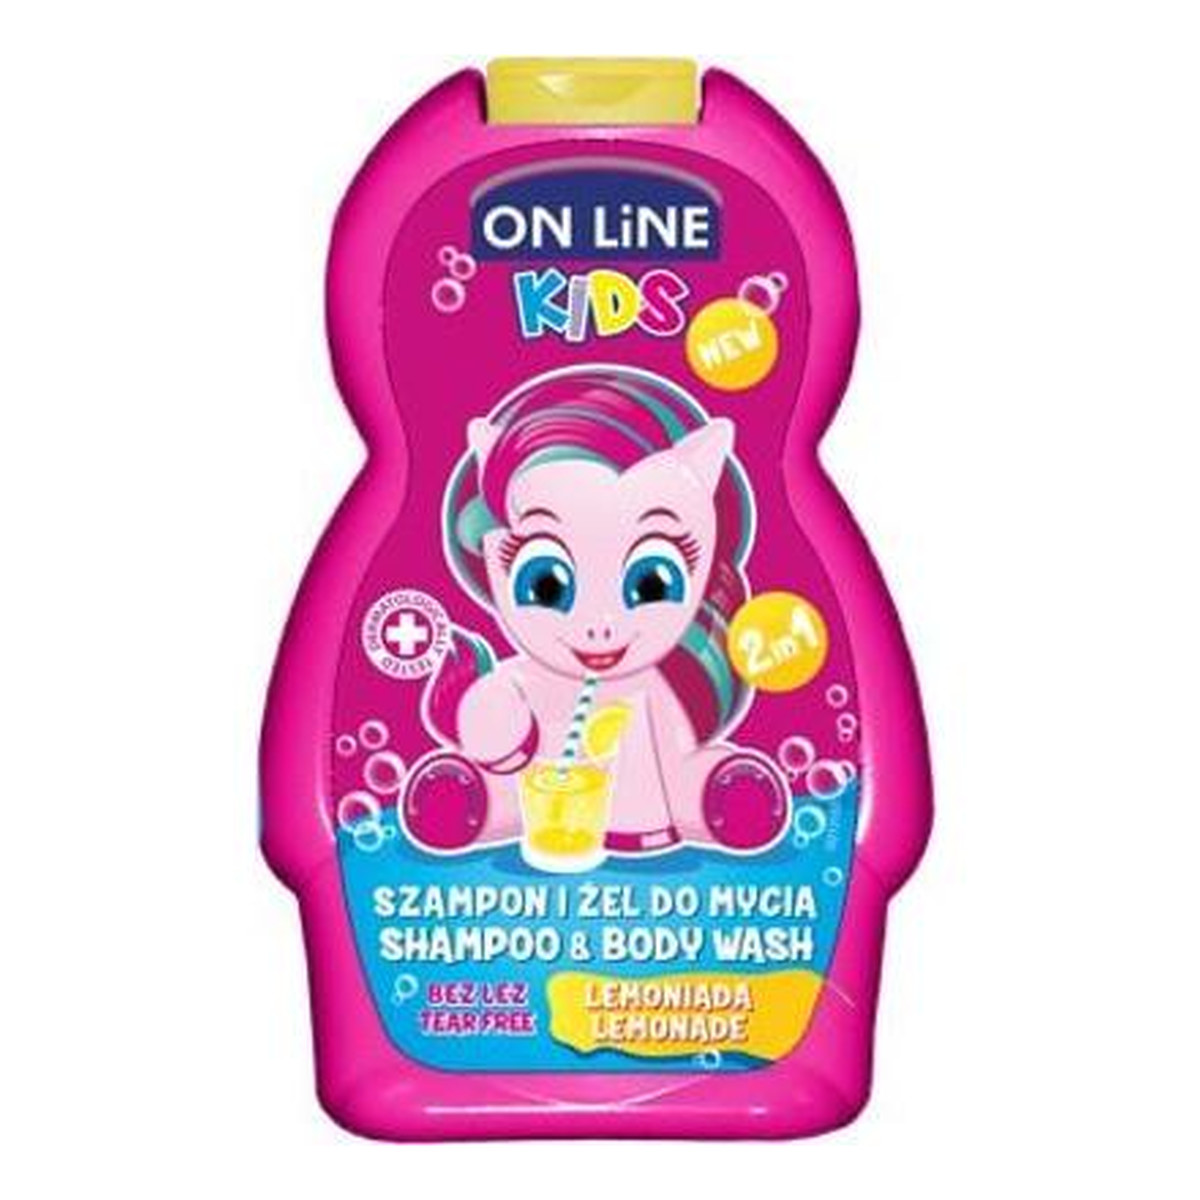 On Line Kids Szampon i żel do mycia 2w1 Lemoniada 250ml